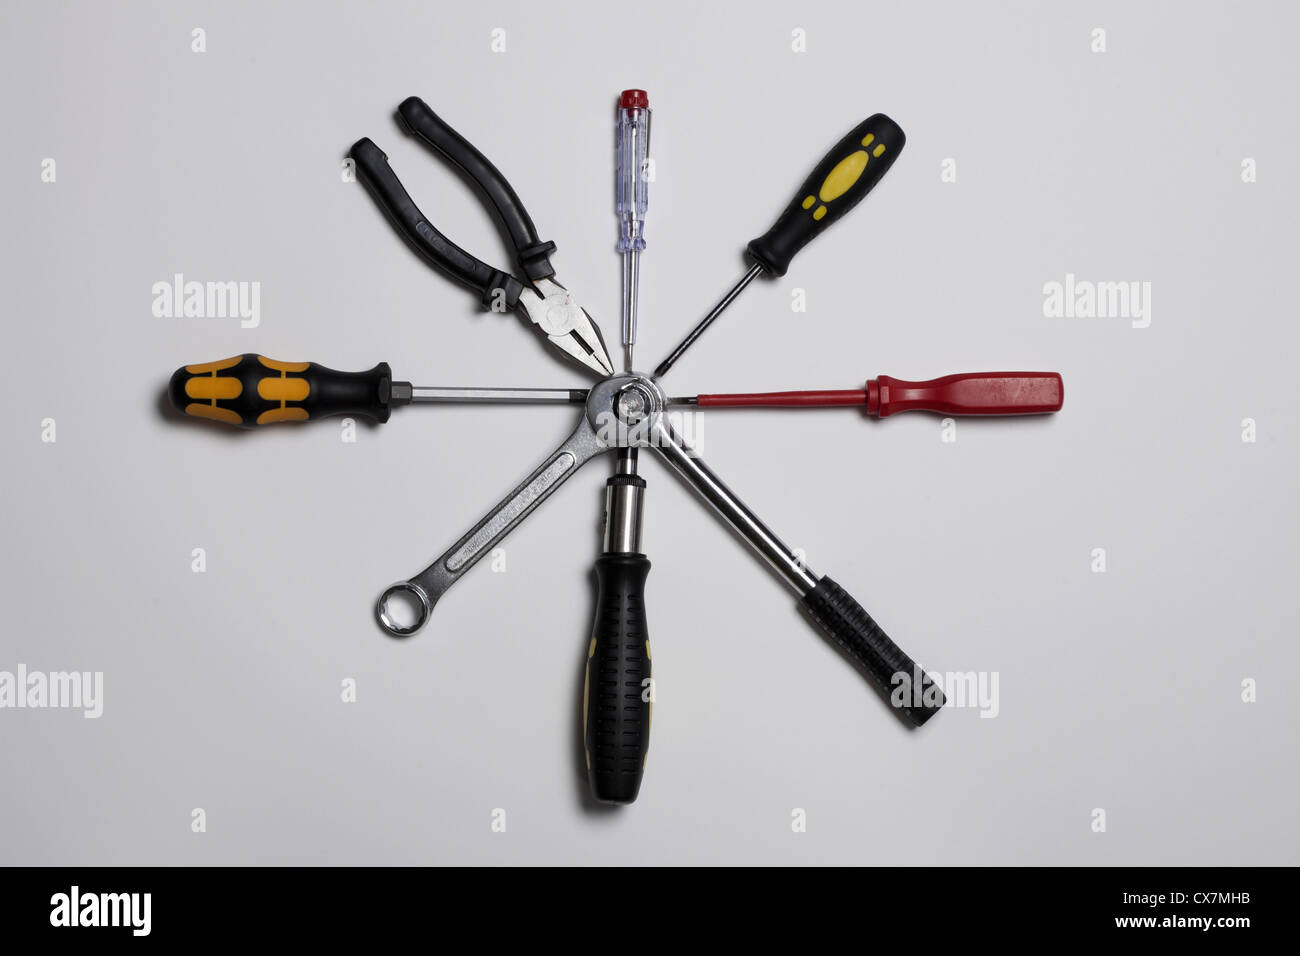 Verschiedene Werkzeuge in einem Kreis angeordnet, in der Mitte verbunden Stockfoto